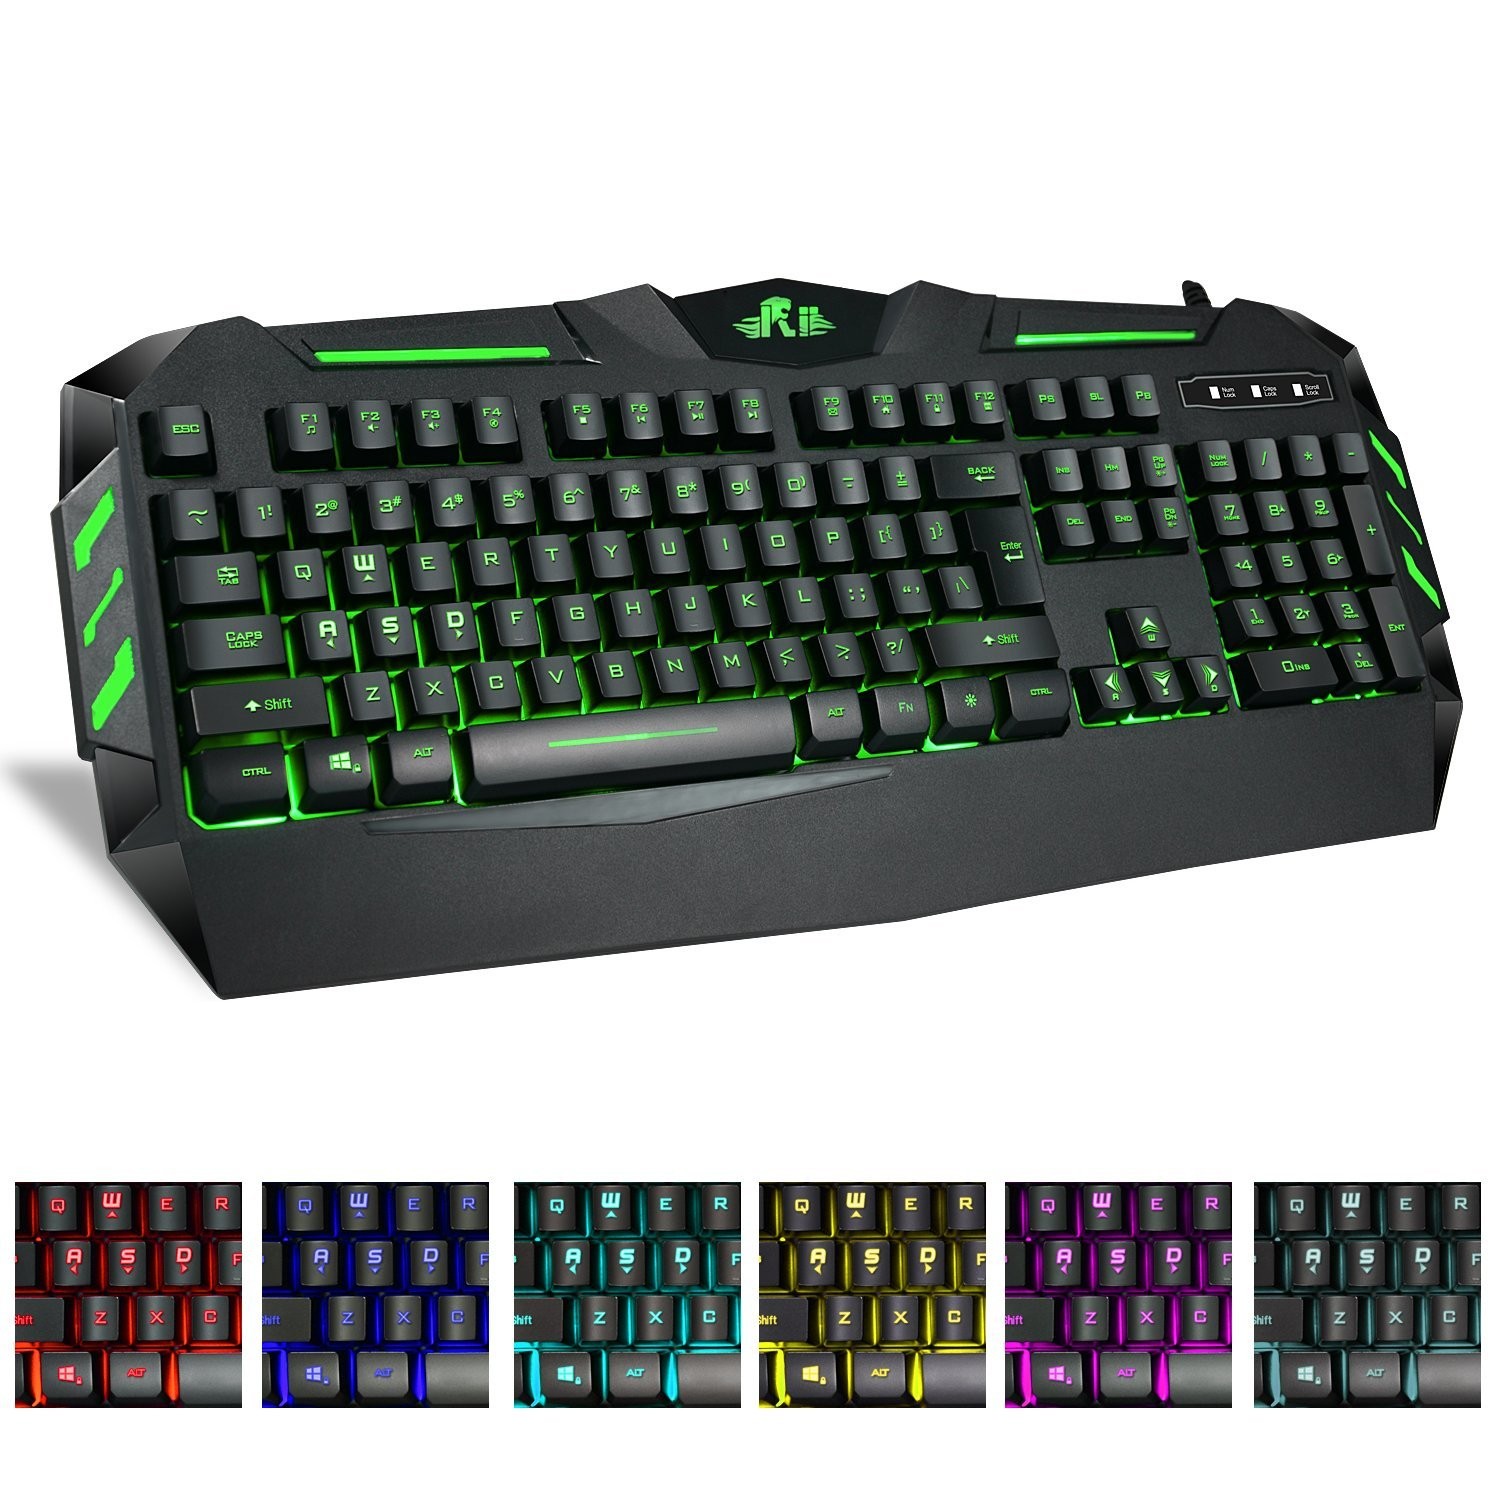 Tastatura gaming USB, cu fir, iluminata 7 culori, multimedia, Rii RK900 cartuseria.ro poza 2021